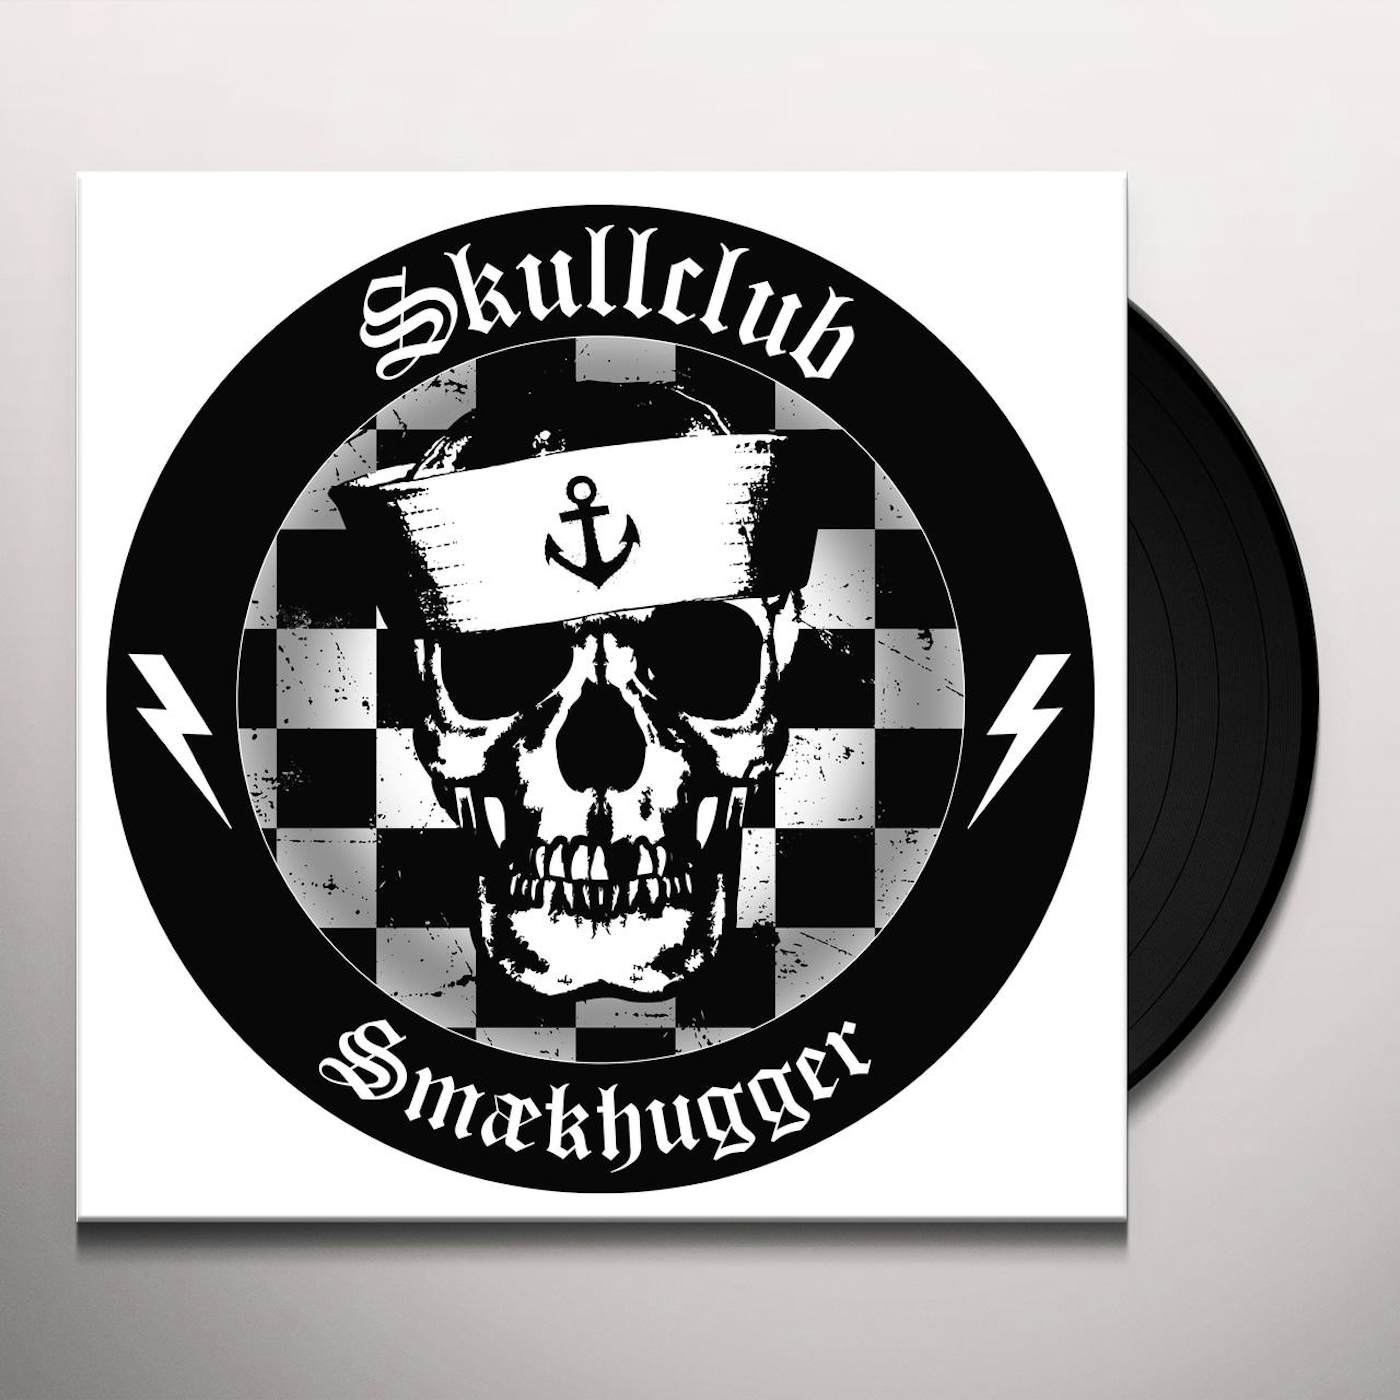 Skullclub SMAEKHUGGER Vinyl Record